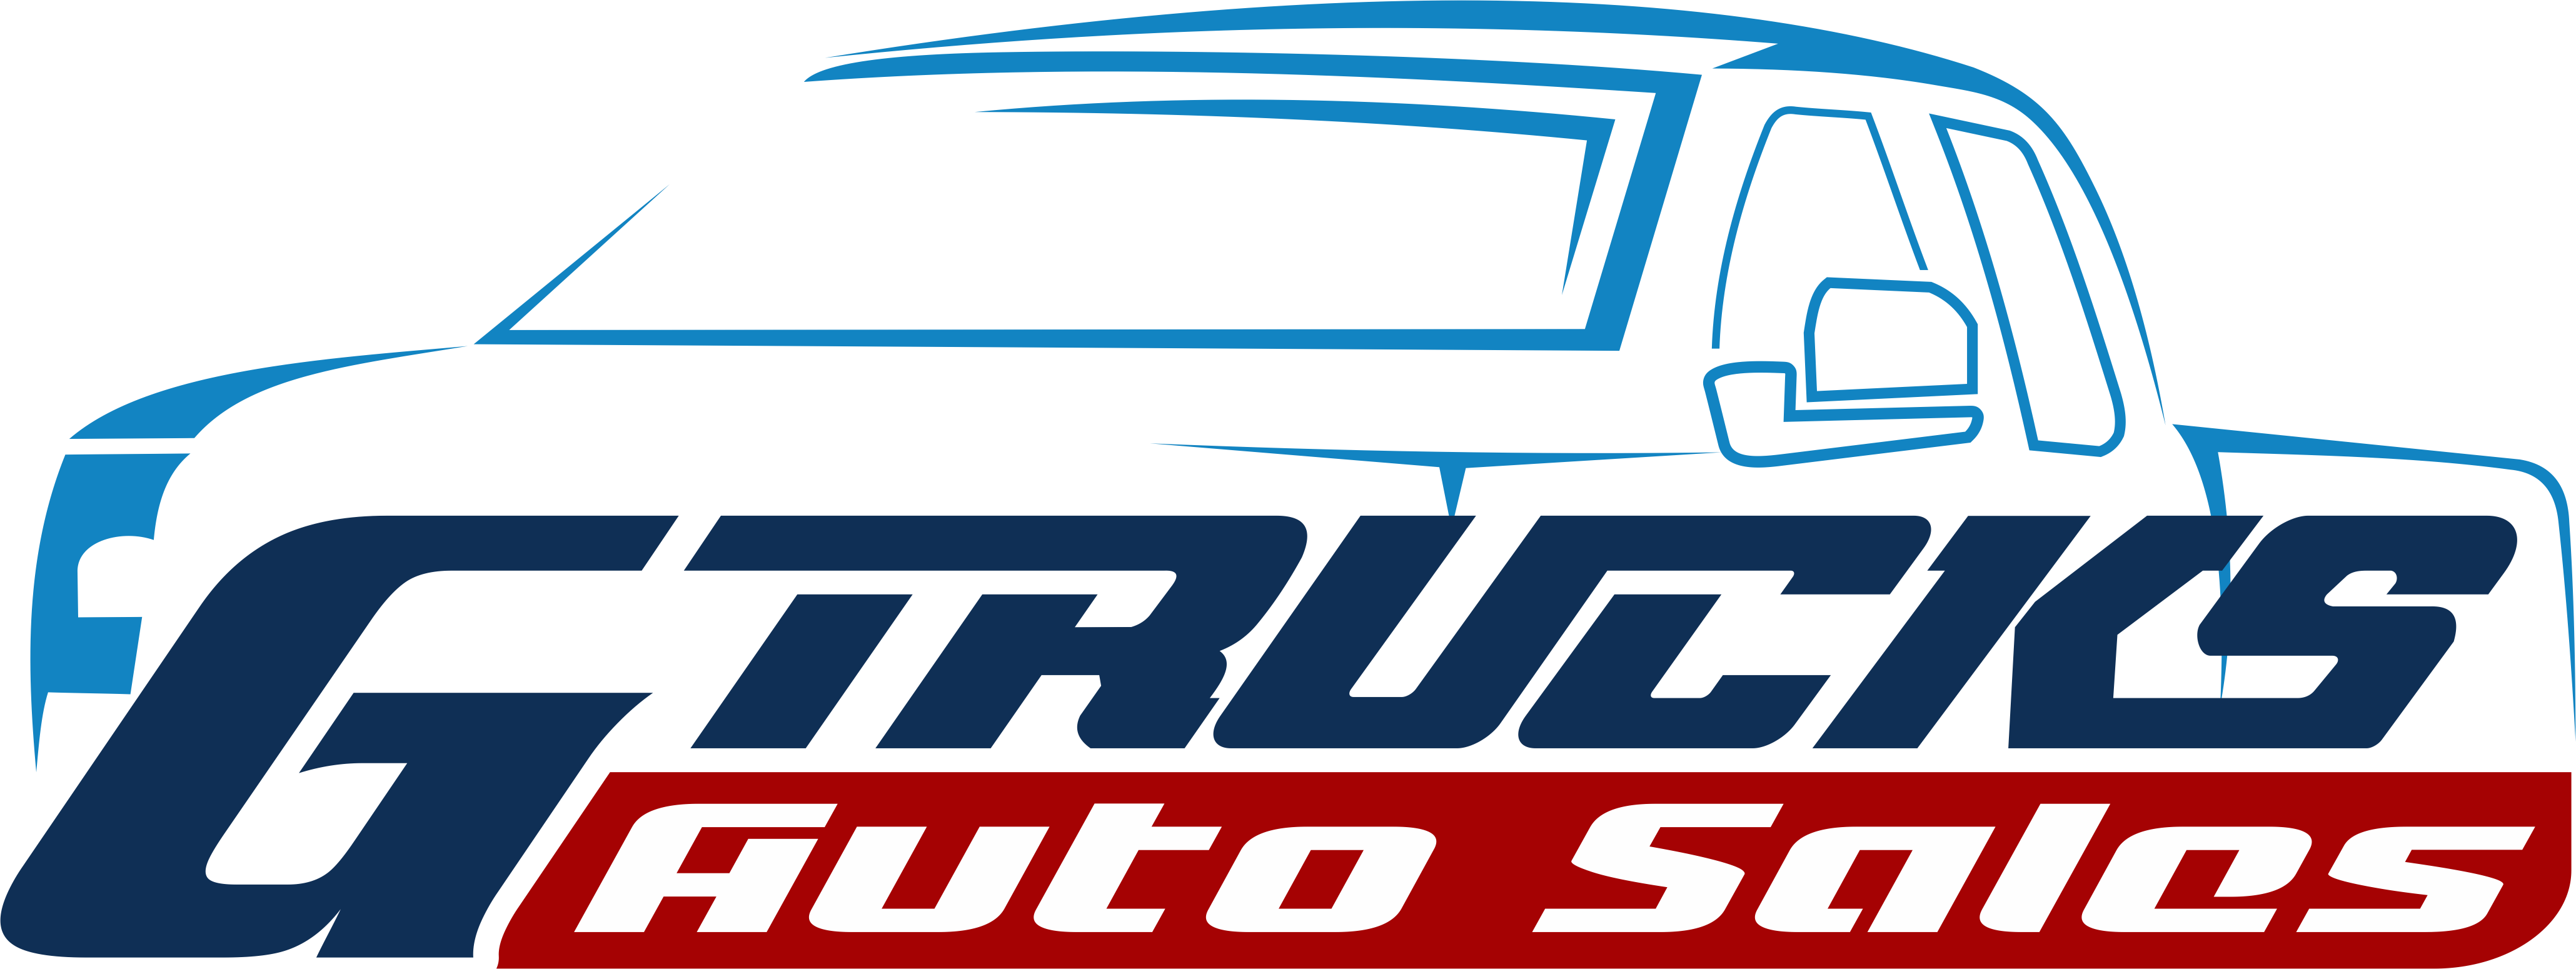 Gtrucks Auto Sales